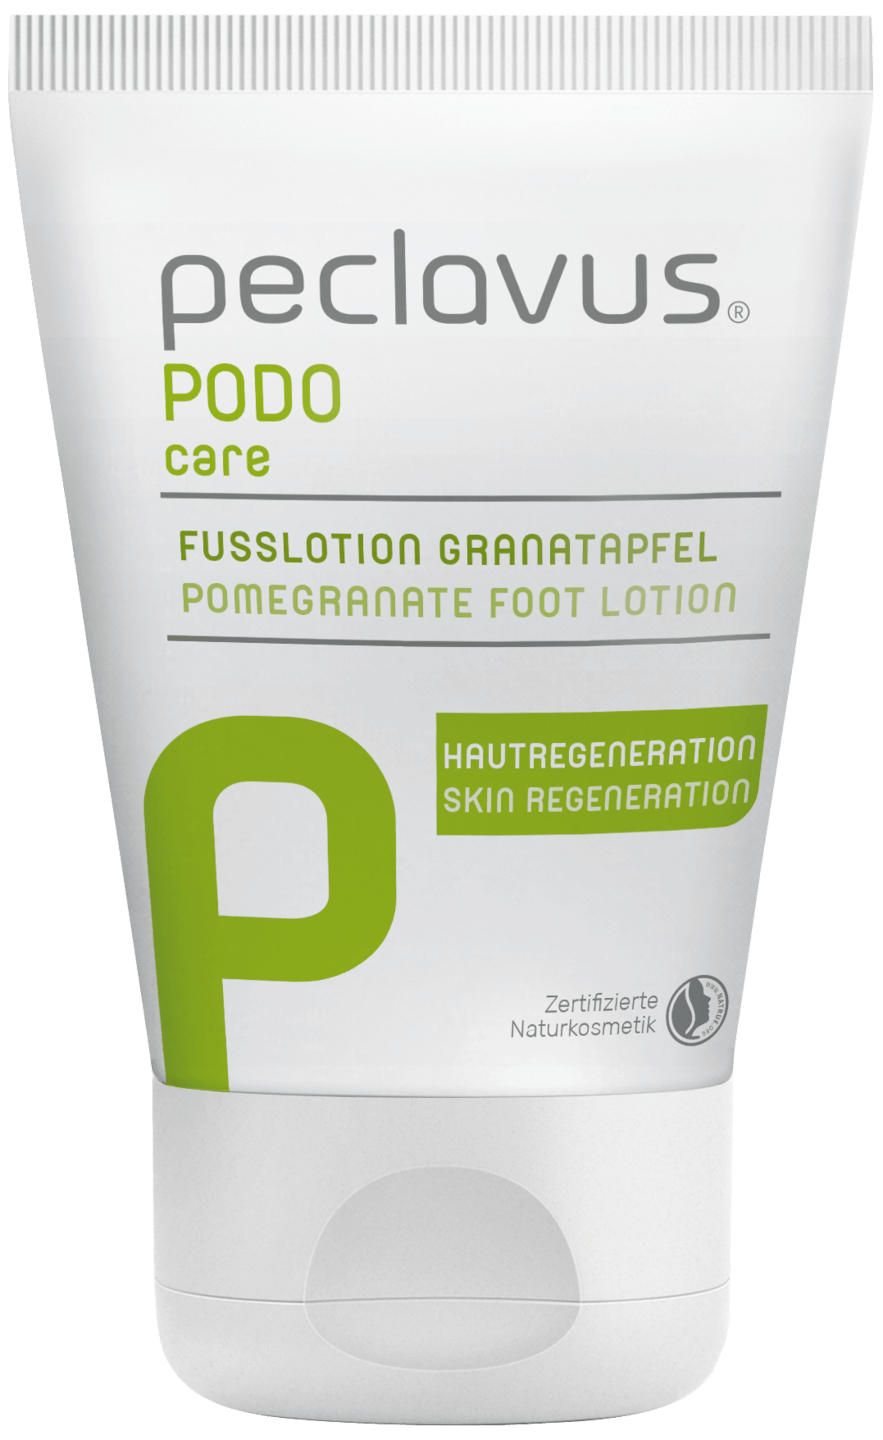 peclavus - Fußlotion Granatapfel, 30 ml